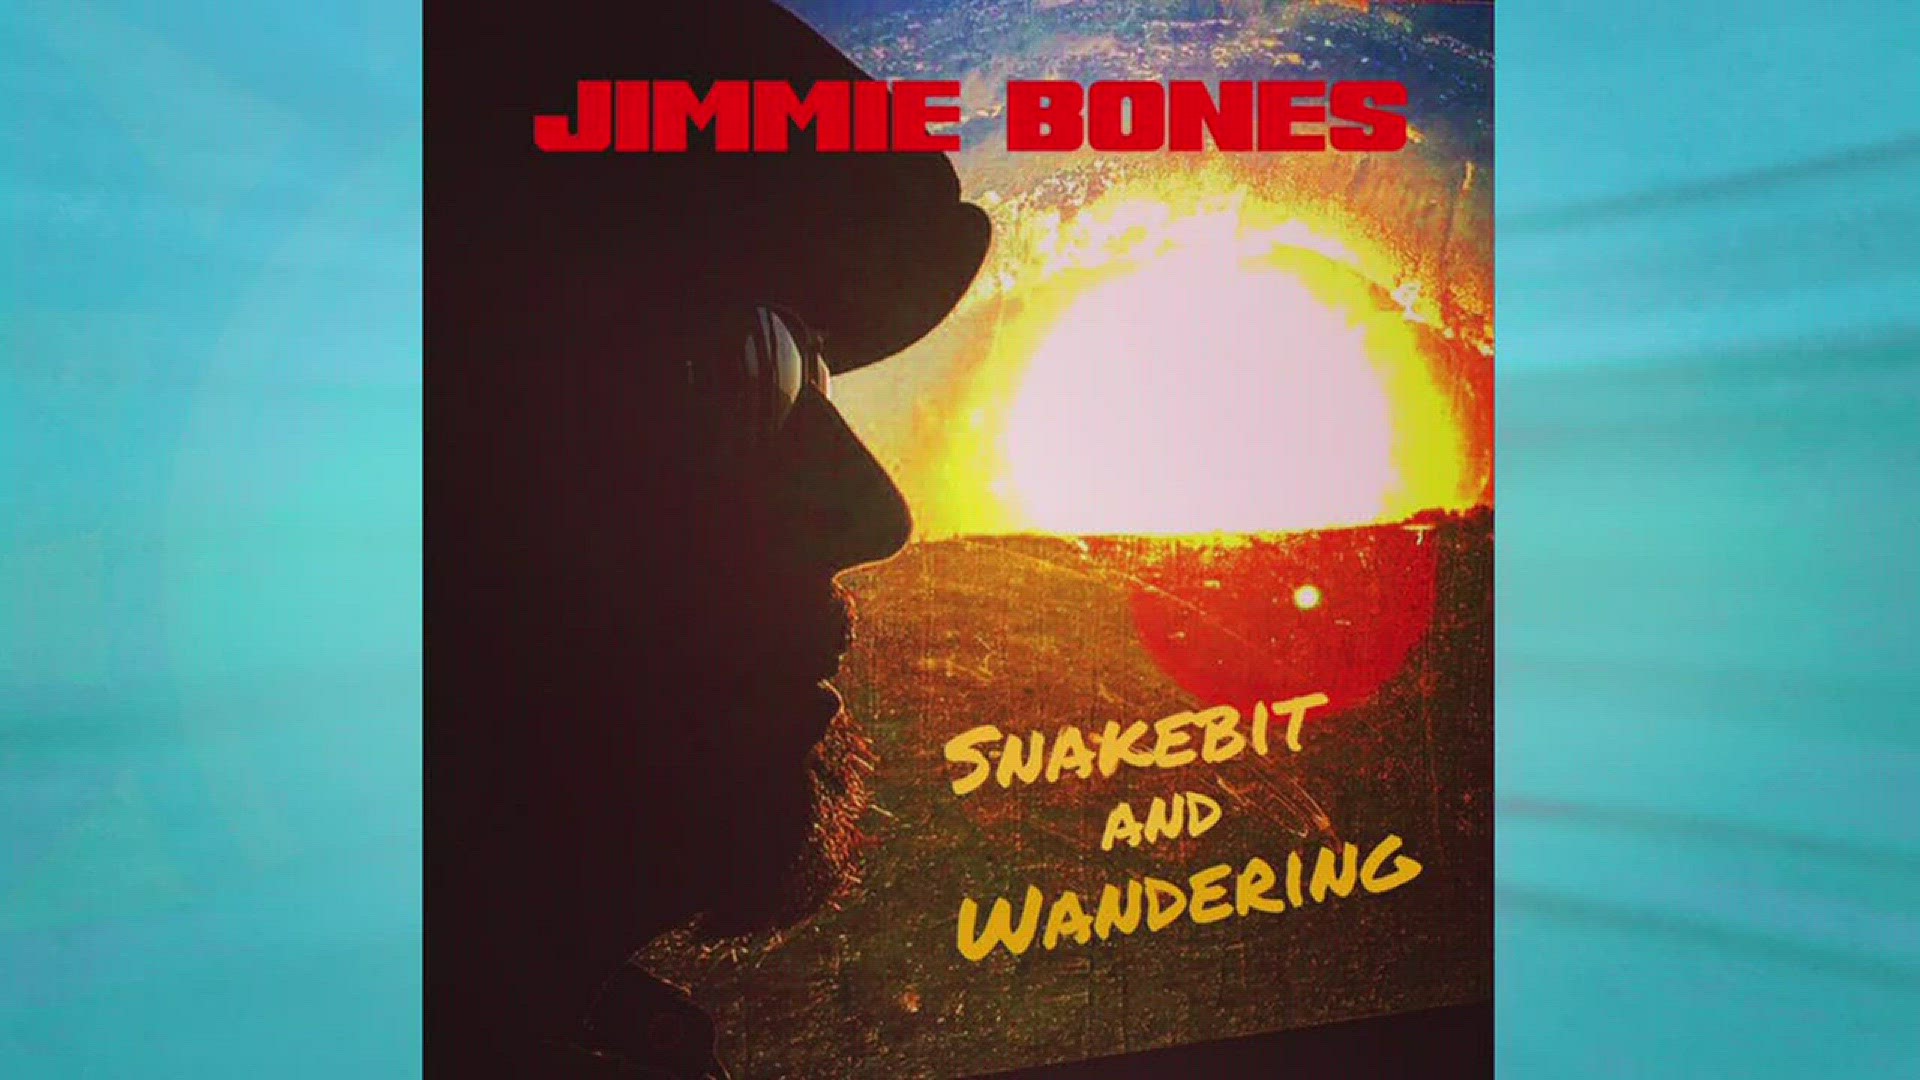 Jimmie Bones Performs